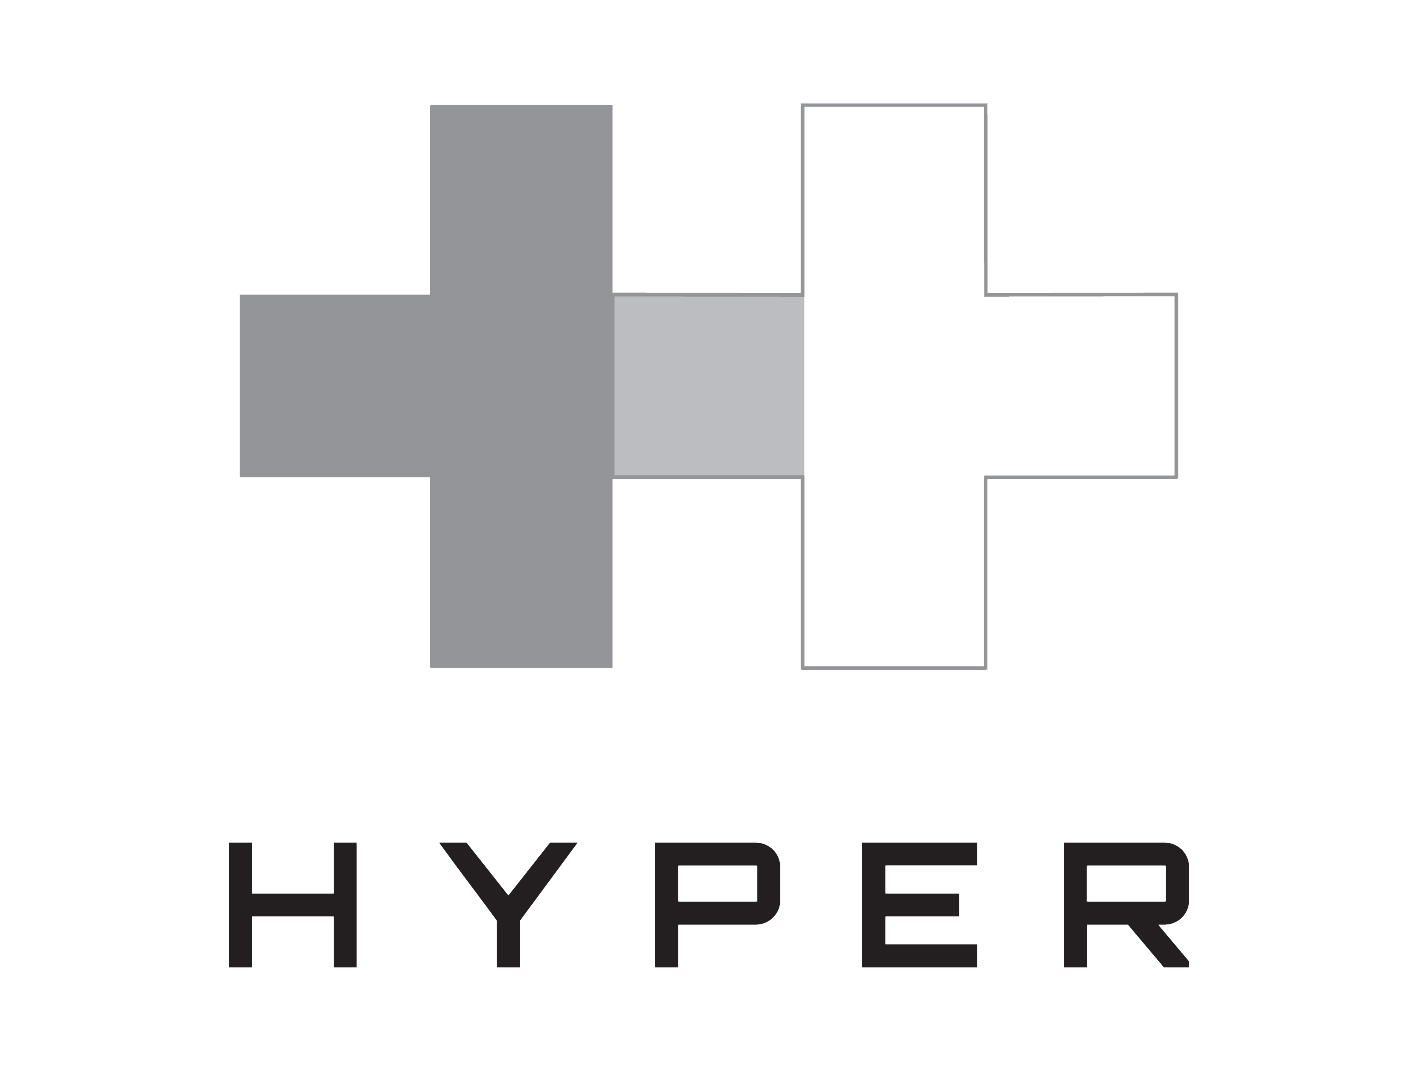 Hyper King Logo Test Start by Enixspirit on DeviantArt